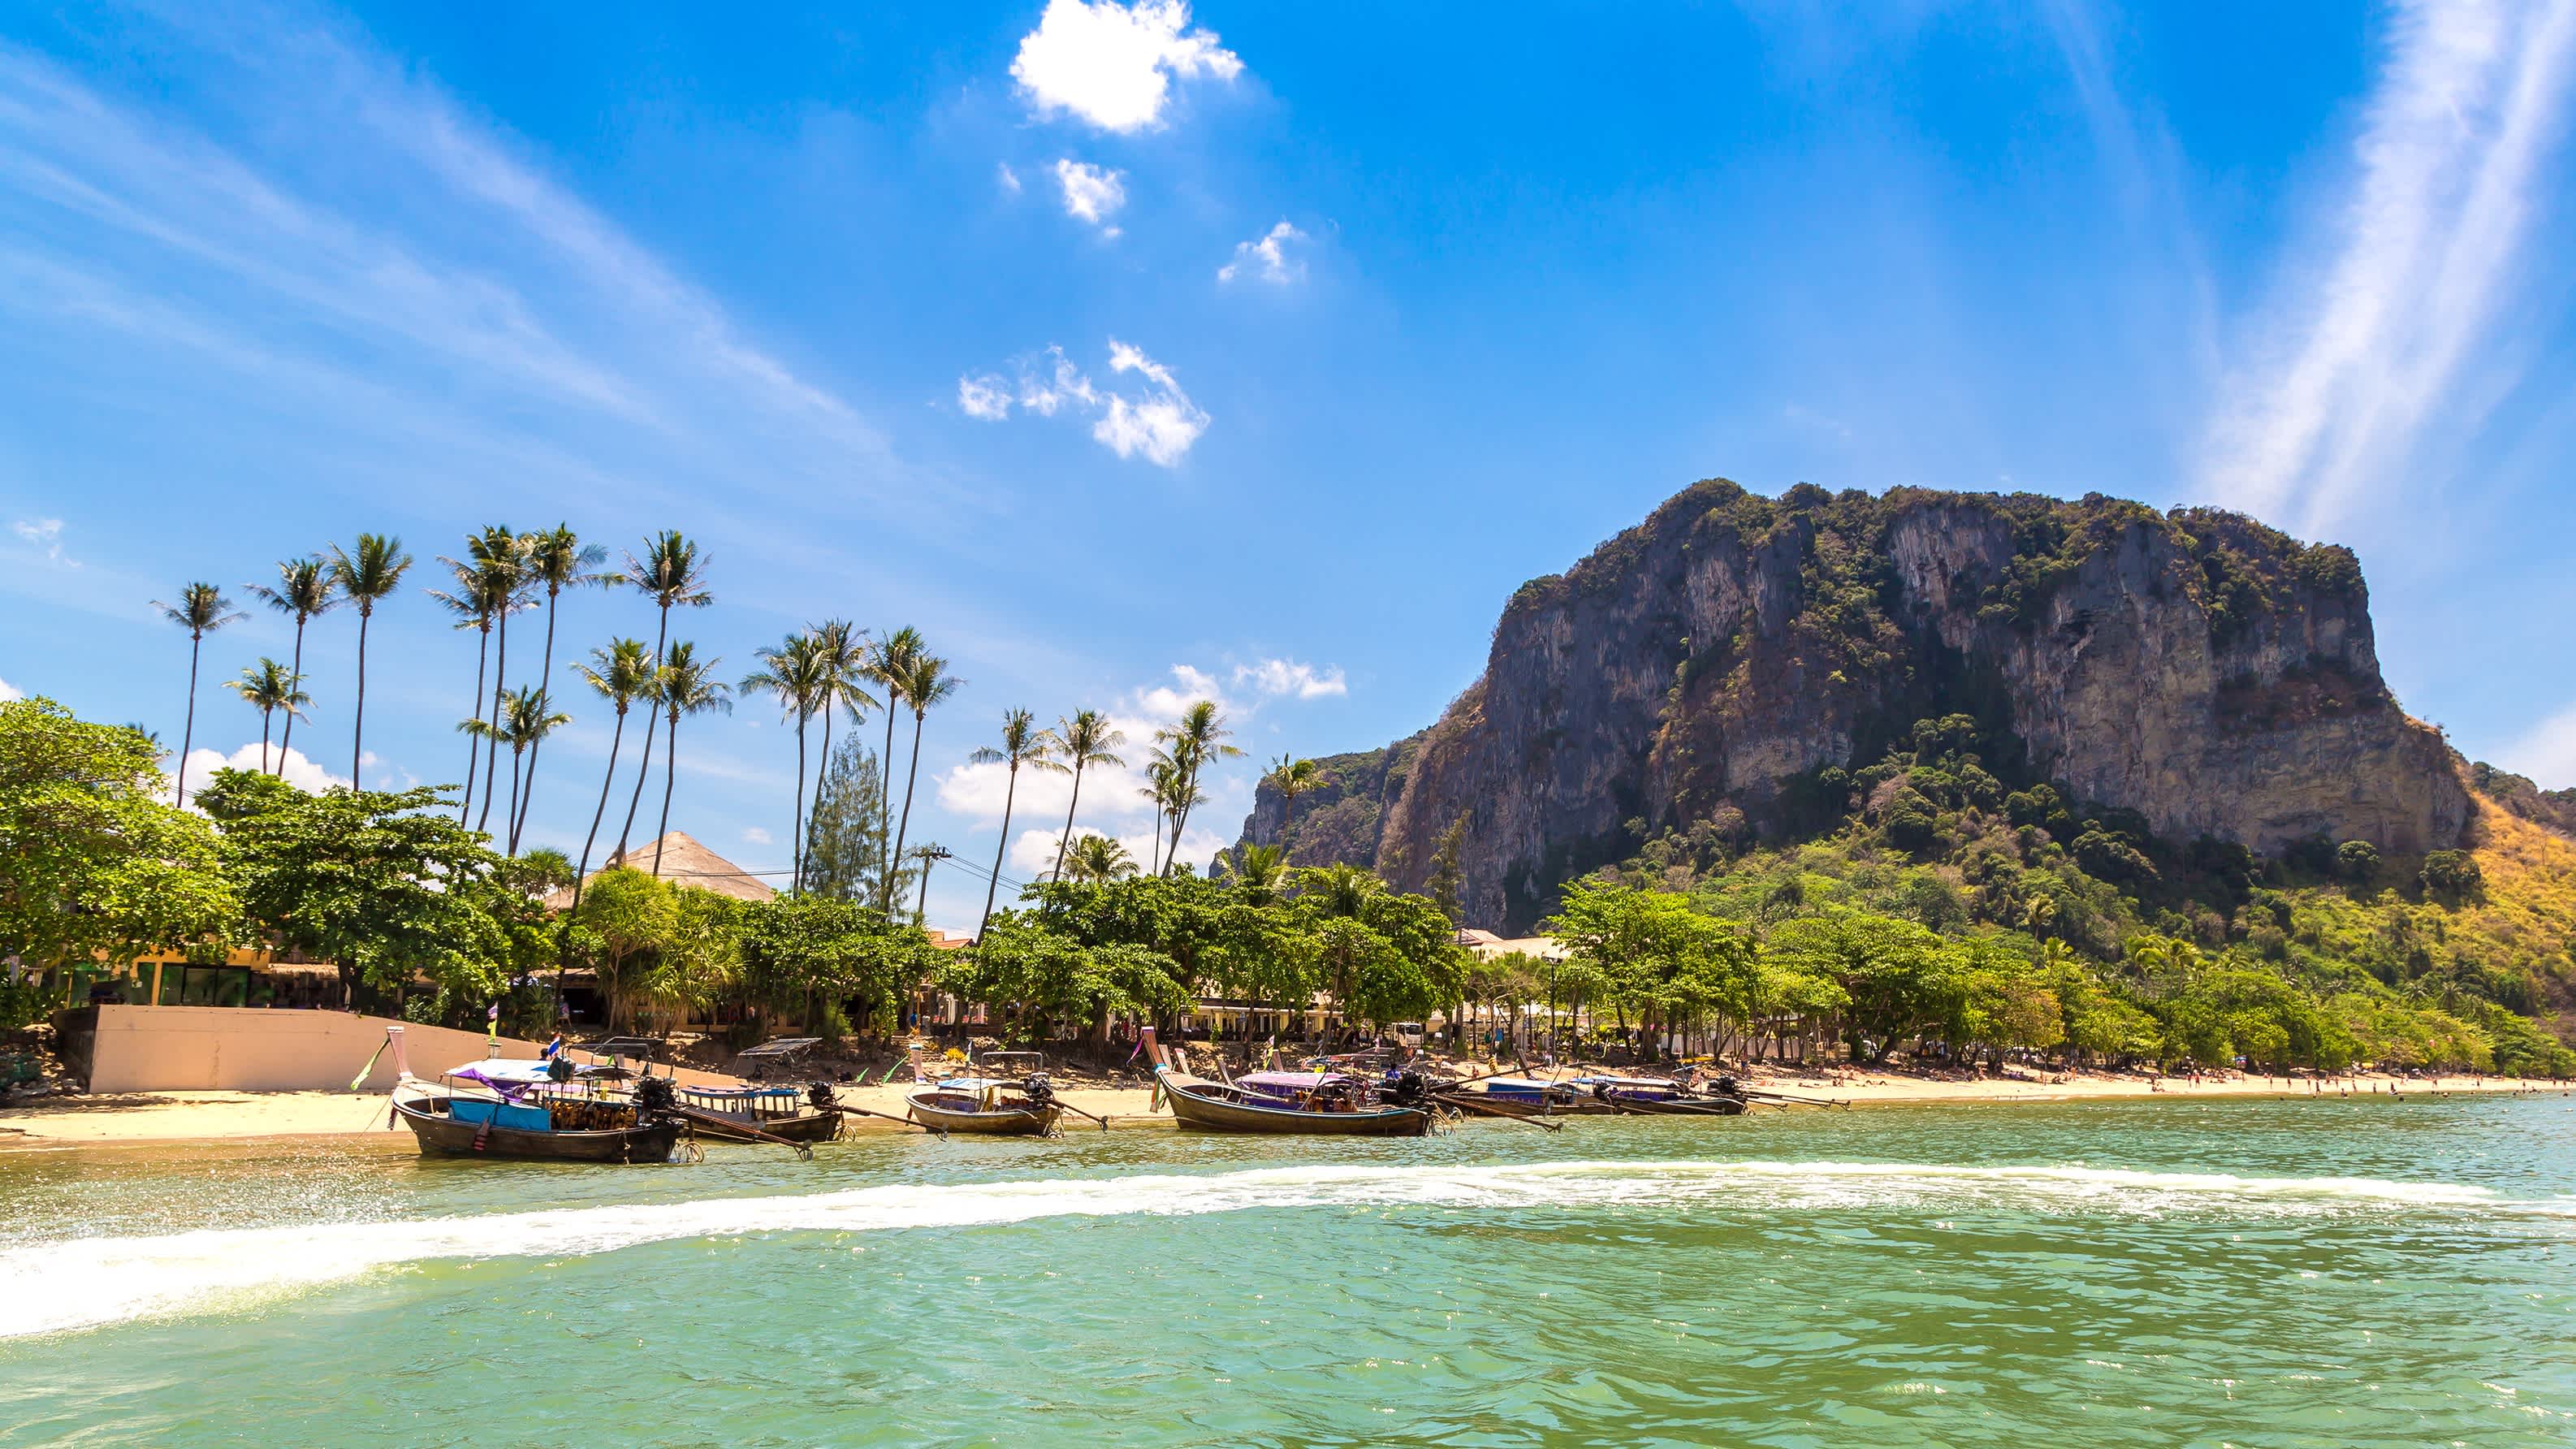 Bateaux sur l'eau claire au bord du sable doré de la plage tropicale d'Ao nang à Krabi, en Thaïlande avec de la végétation et des rochers en arrière plan